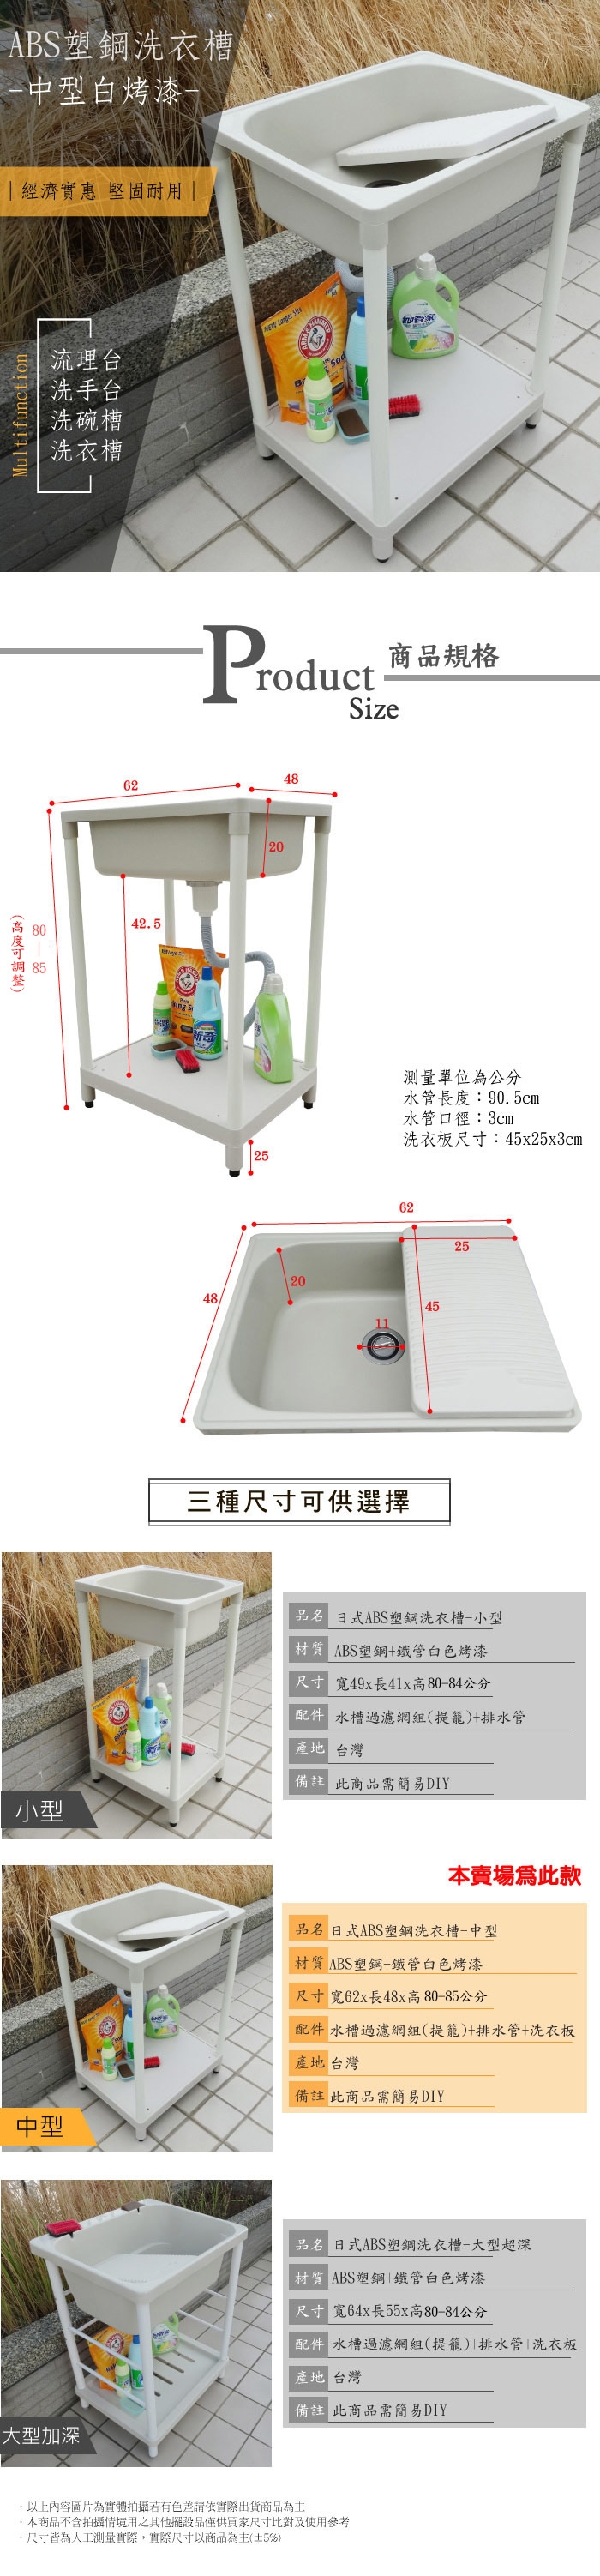 【Abis】雙11爆殺組~日式穩固耐用ABS塑鋼加大超深洗衣槽1組 +中型洗衣槽1組